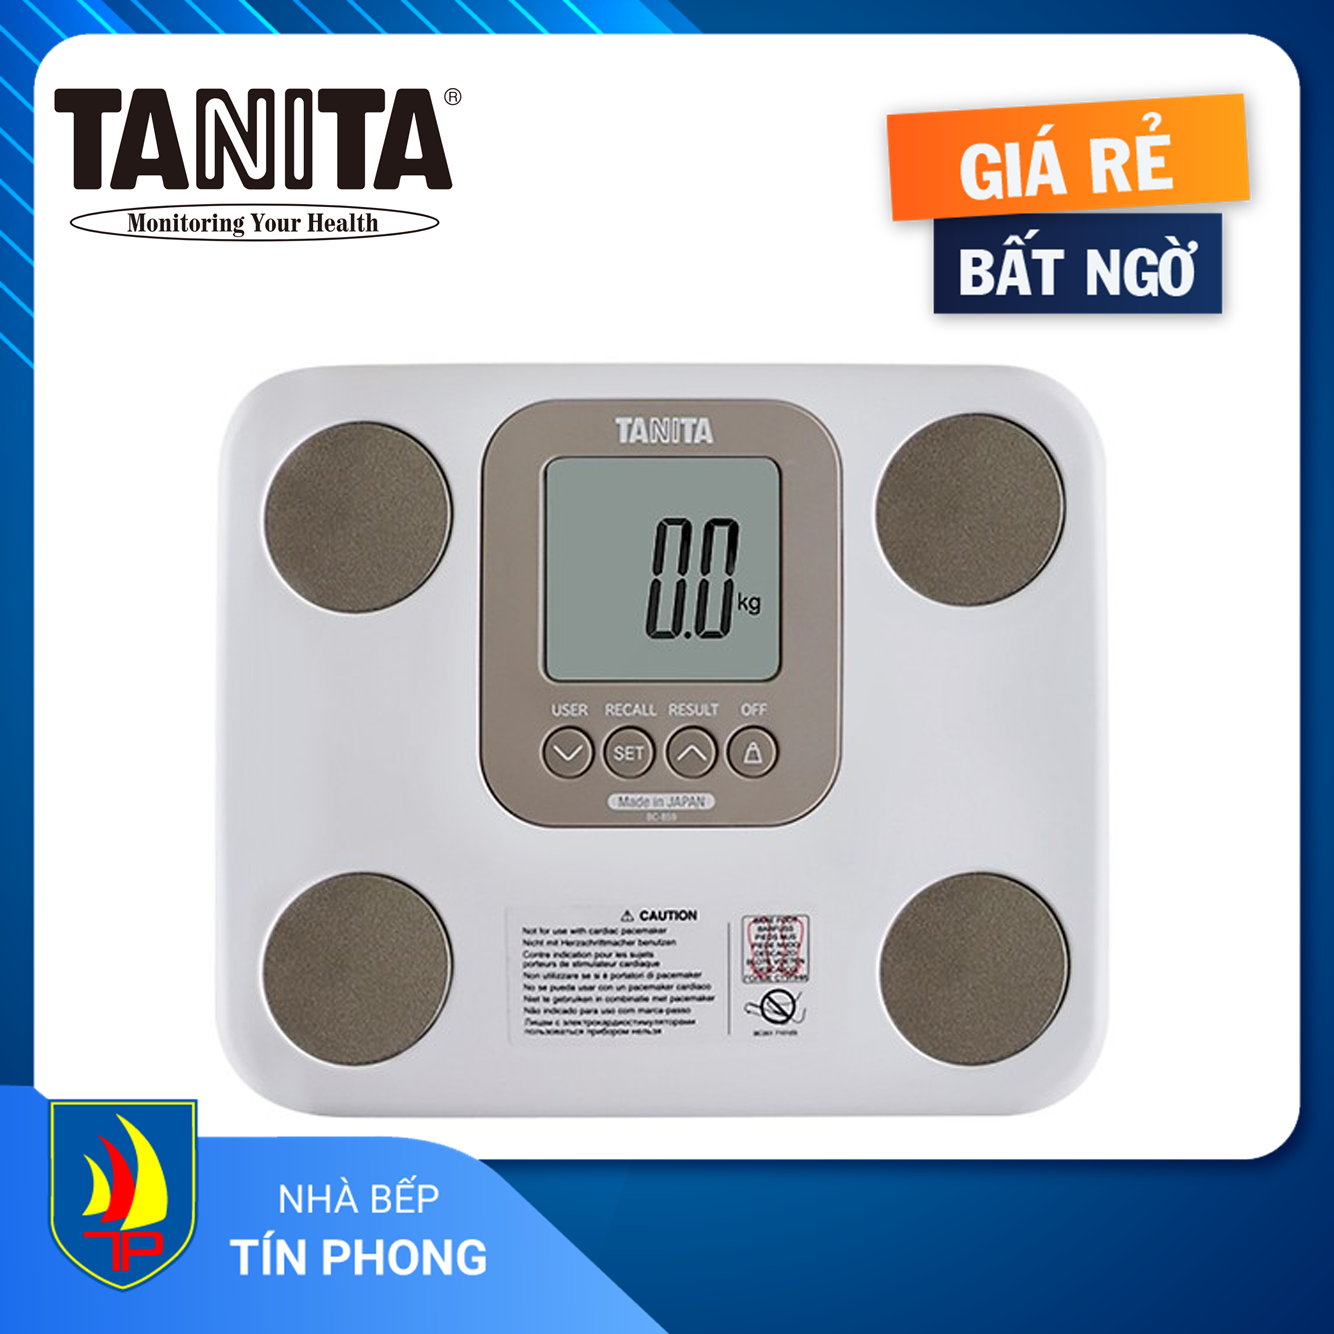 CÂN ĐIỆN TỬ TANITA BC859 WH20 (MÀU TRẮNG). Màn hình hiển thị: LCD. Tải trọng tối đa: 150kg. 7 chức năng: Cân nặng, tuổi chuyển đổi, tỷ lệ trao đổi chất, khối lượng cơ, tỷ lệ phần trăm mỡ, tỷ lệ mỡ nội tạng